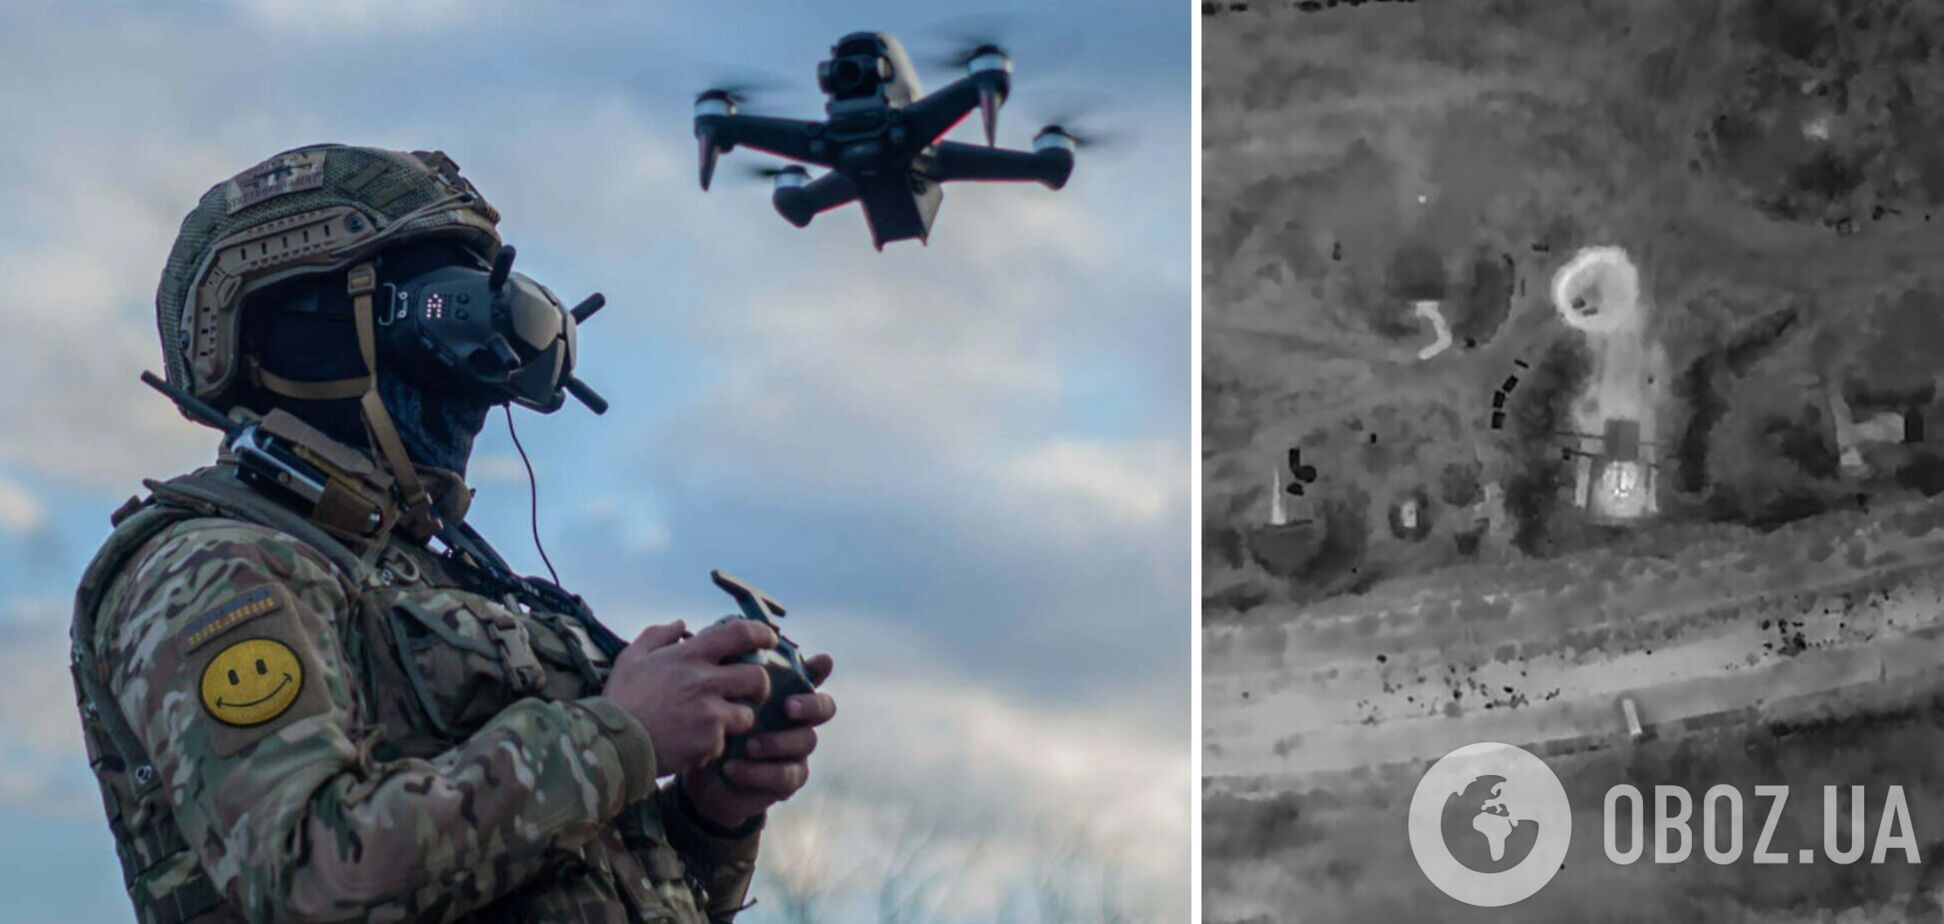 'Демилитаризация' оккупантов идет по плану: в сети показали видео успешной работы дрона ВСУ на Херсонском направлении